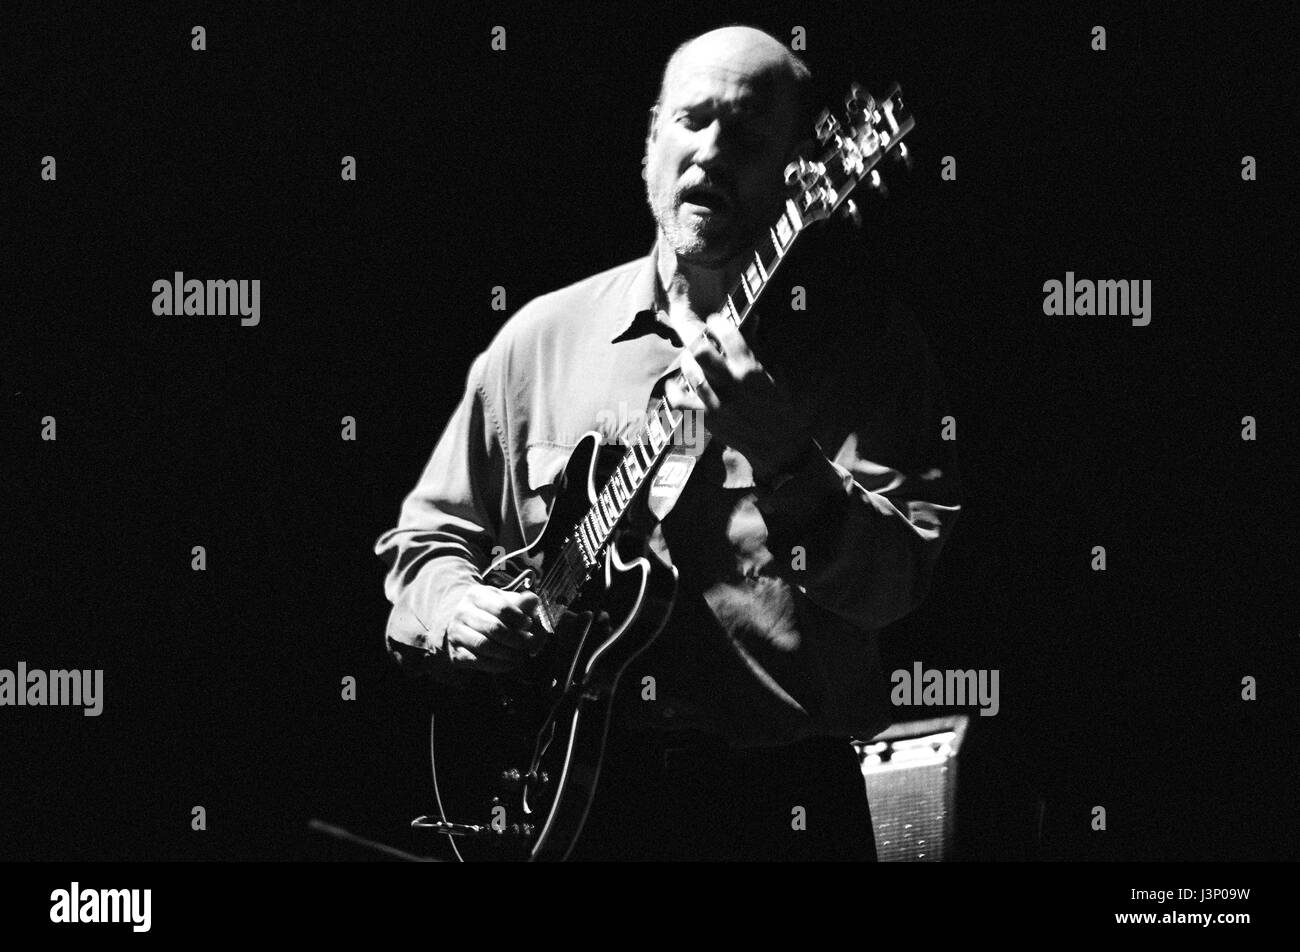 John Scofield (né à 26 décembre 1951, Dayton, Ohio, États-Unis, souvent appelé « Sco », est un guitariste américain de jazz-rock, photo Kazimierz Jurewicz Banque D'Images